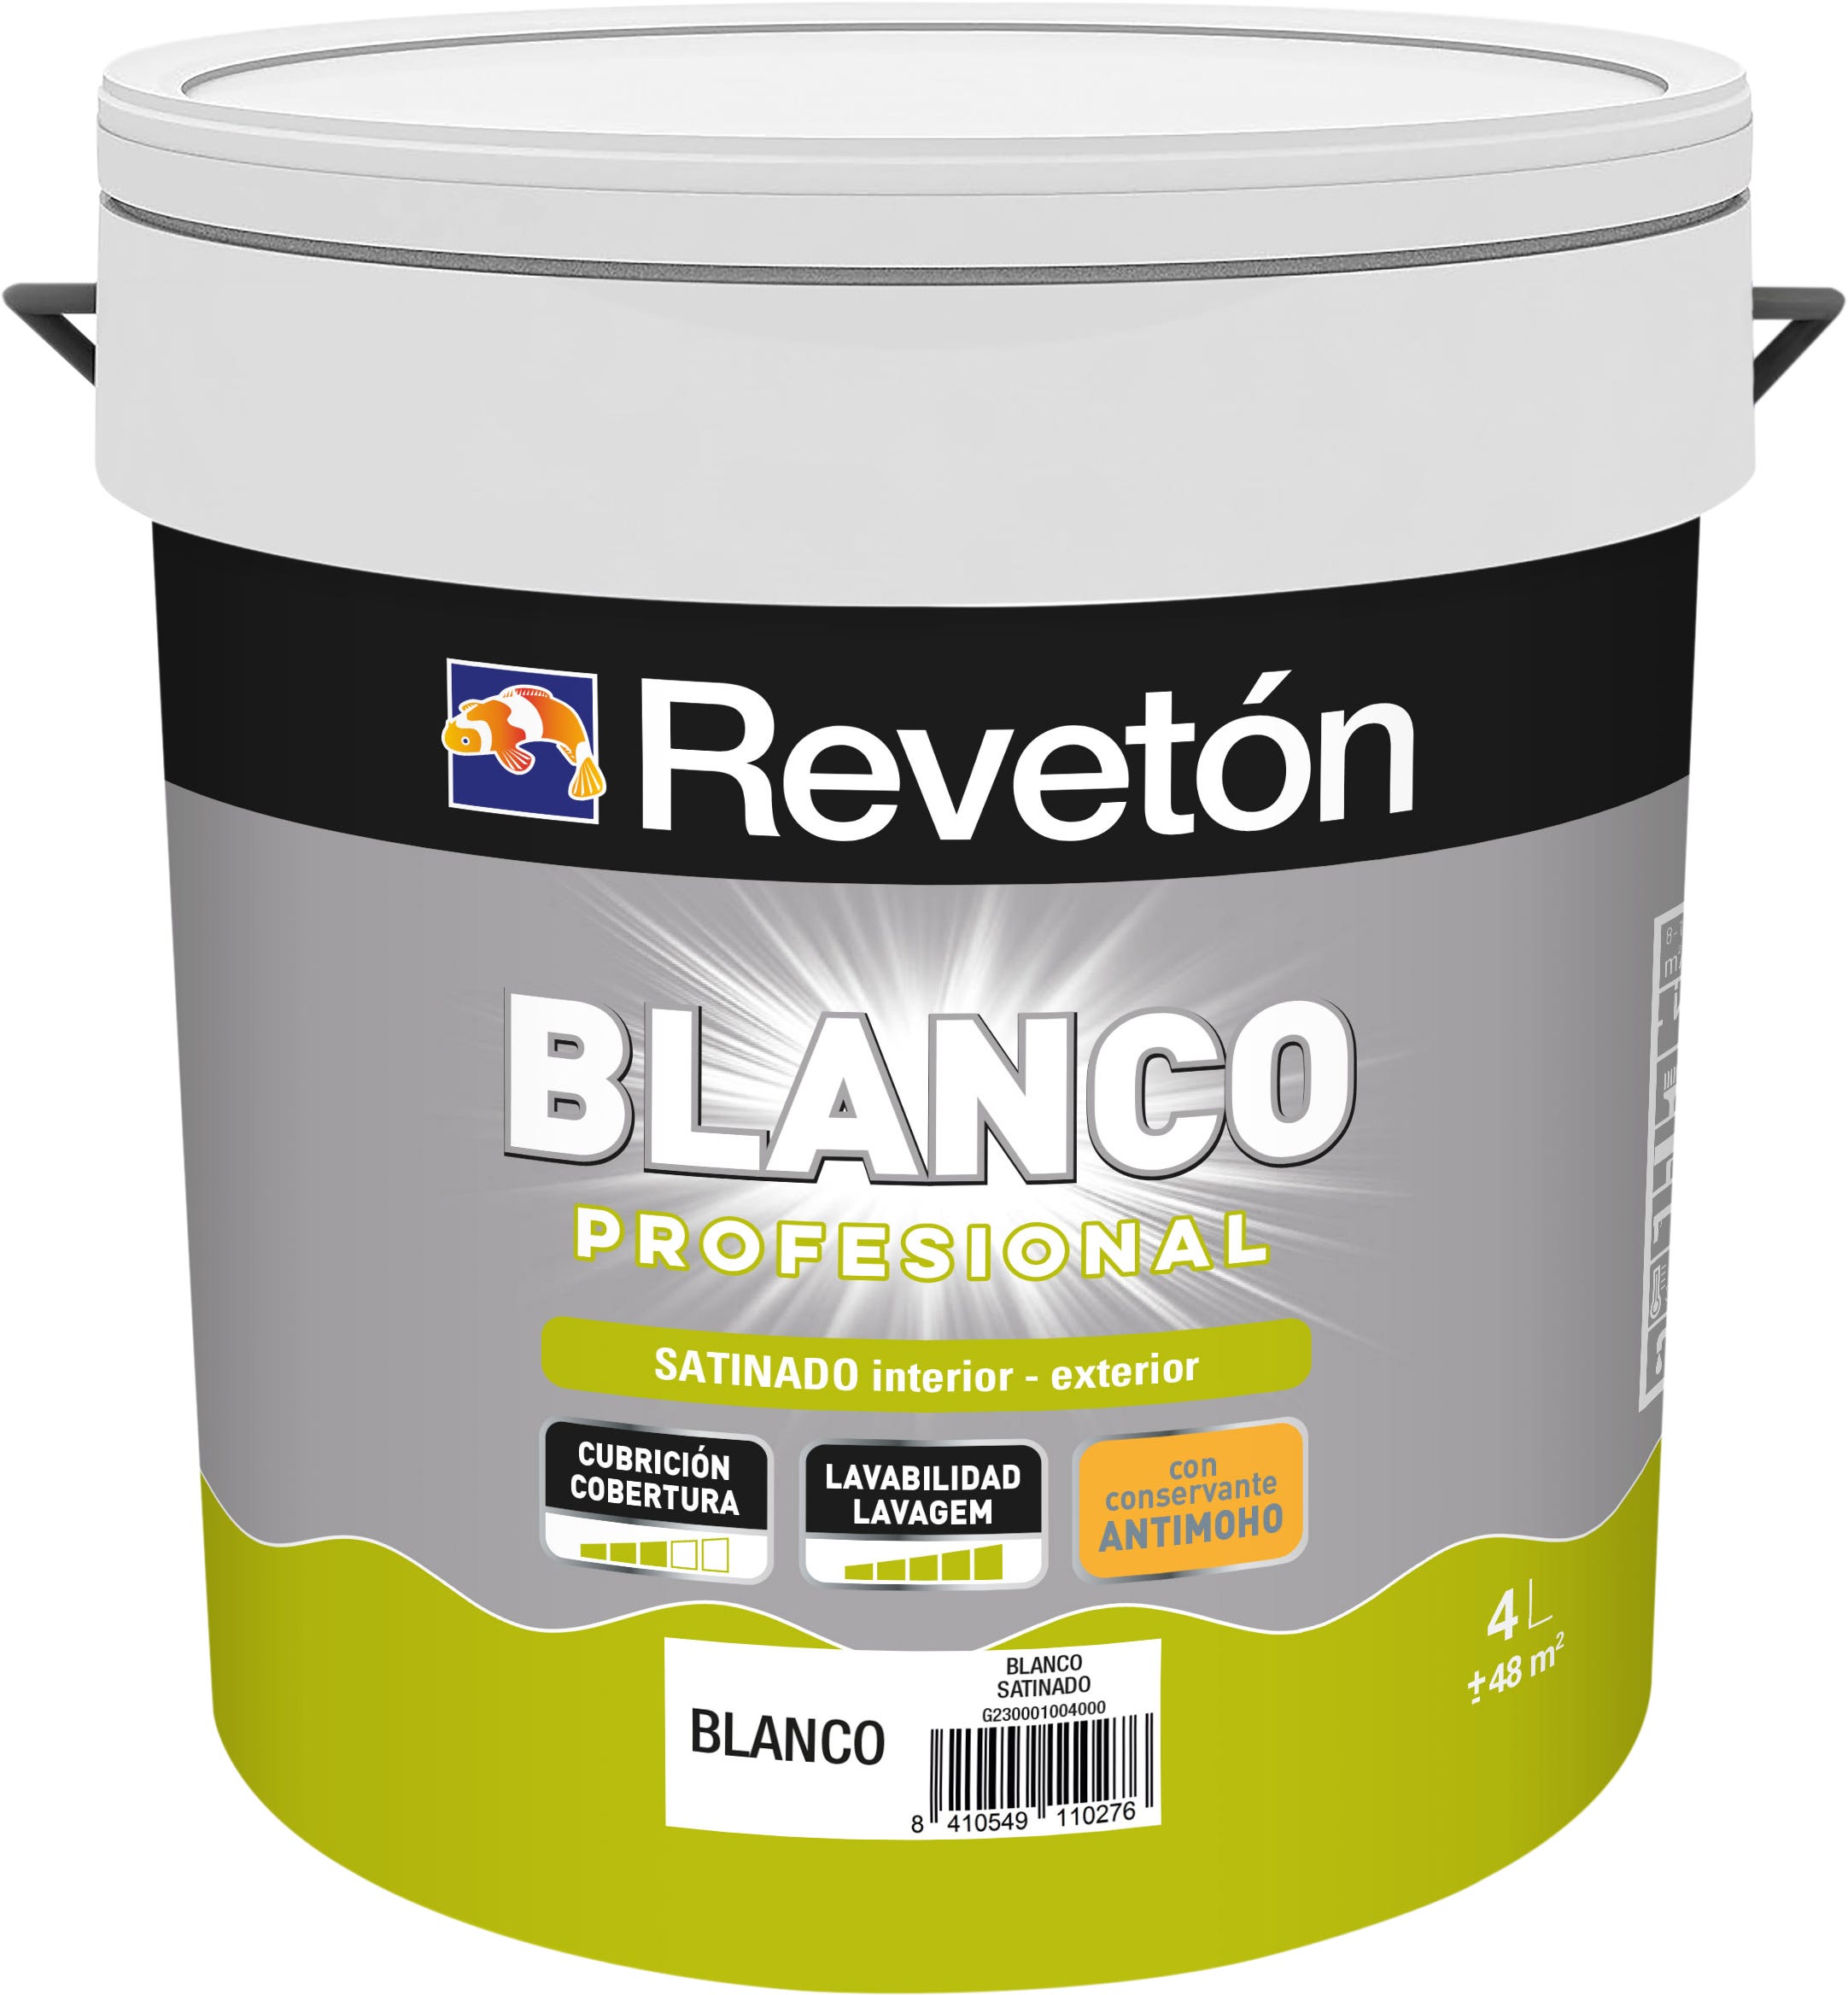 Pintura Con Conservante Antimoho Blanco marca Reveton — Pintures